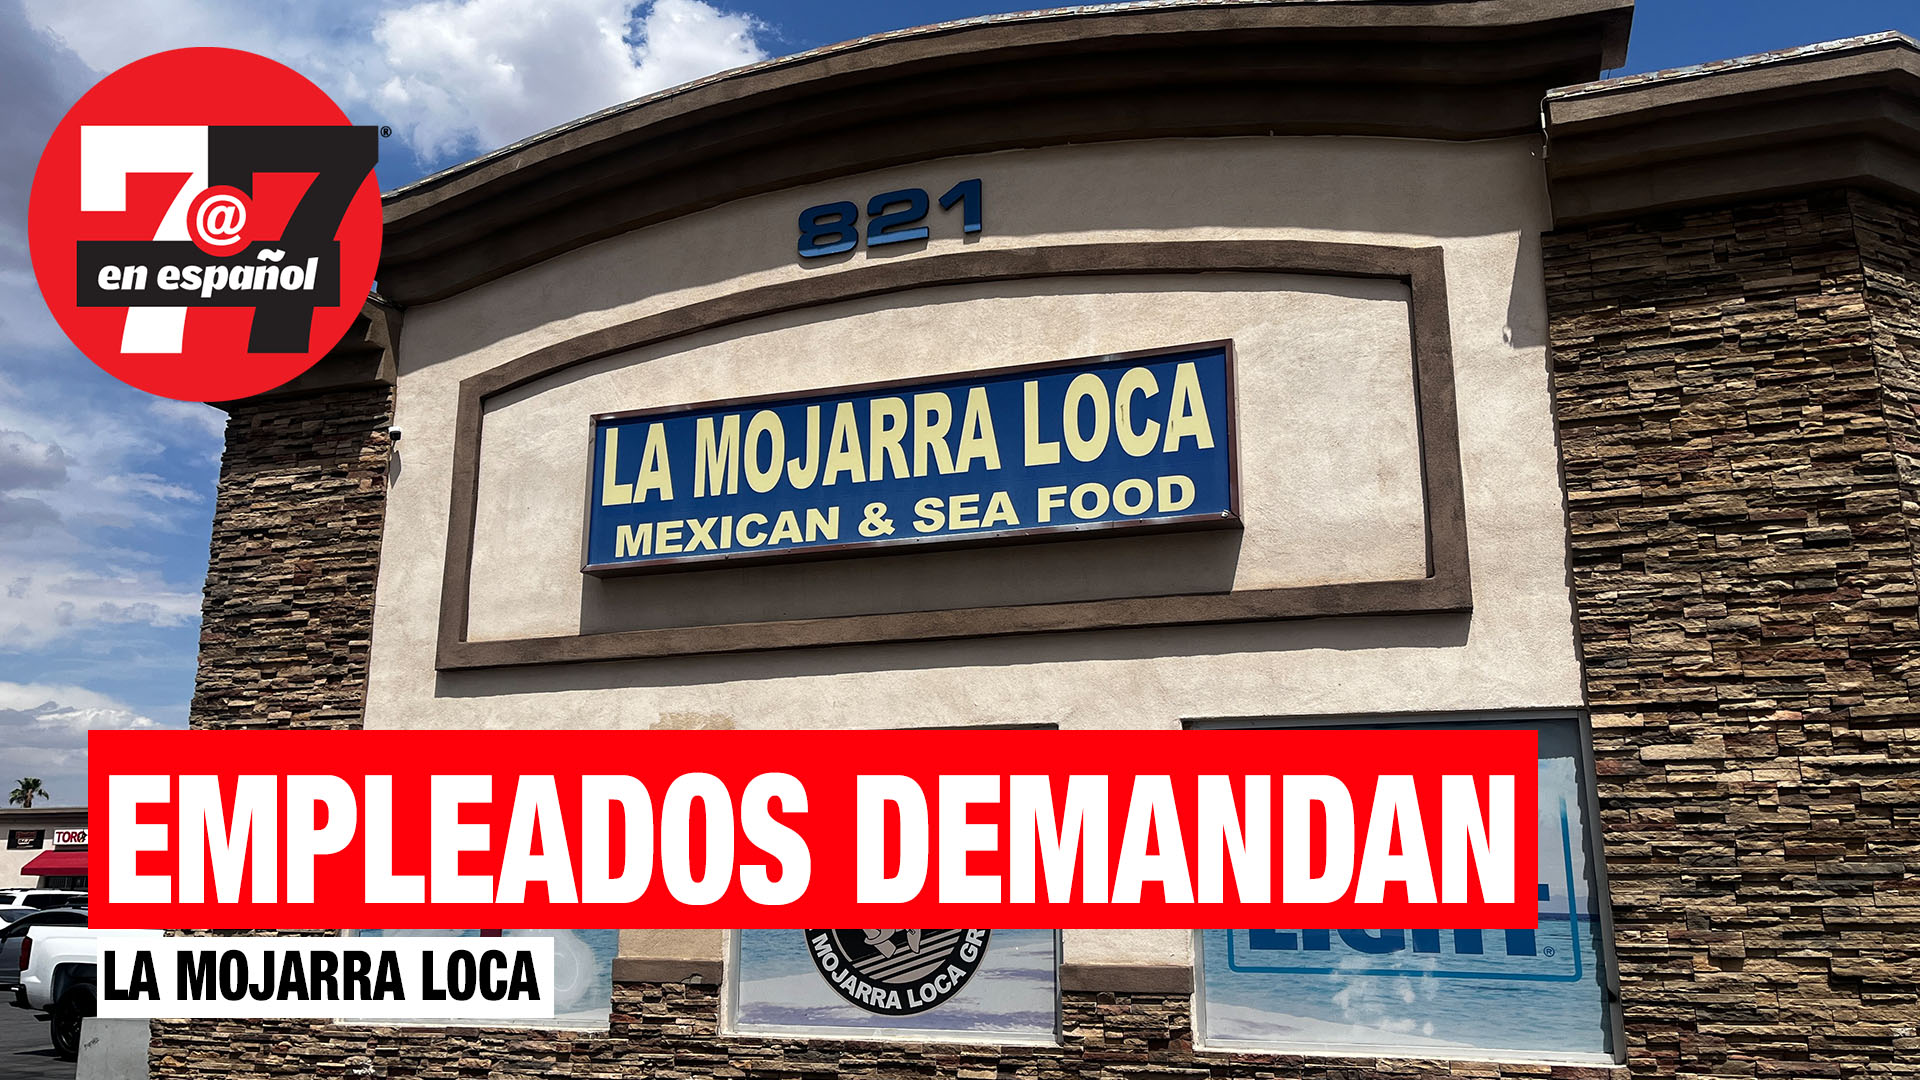 Noticias de Las Vegas | 33 empleados demandan a La Mojarra Loca de Las Vegas